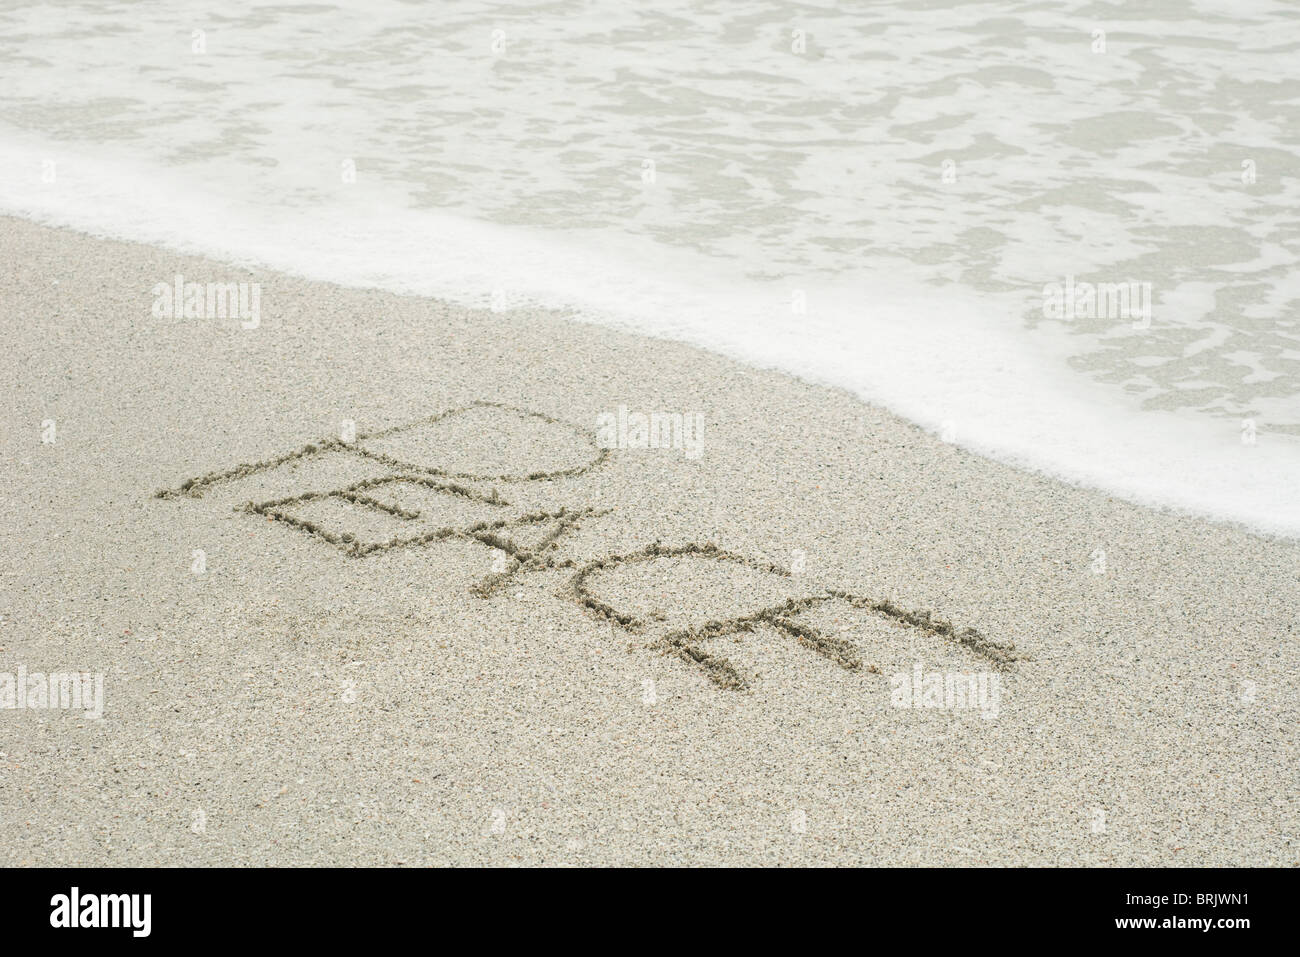 Das Wort "Frieden" in den Sand am Strand geschrieben Stockfoto